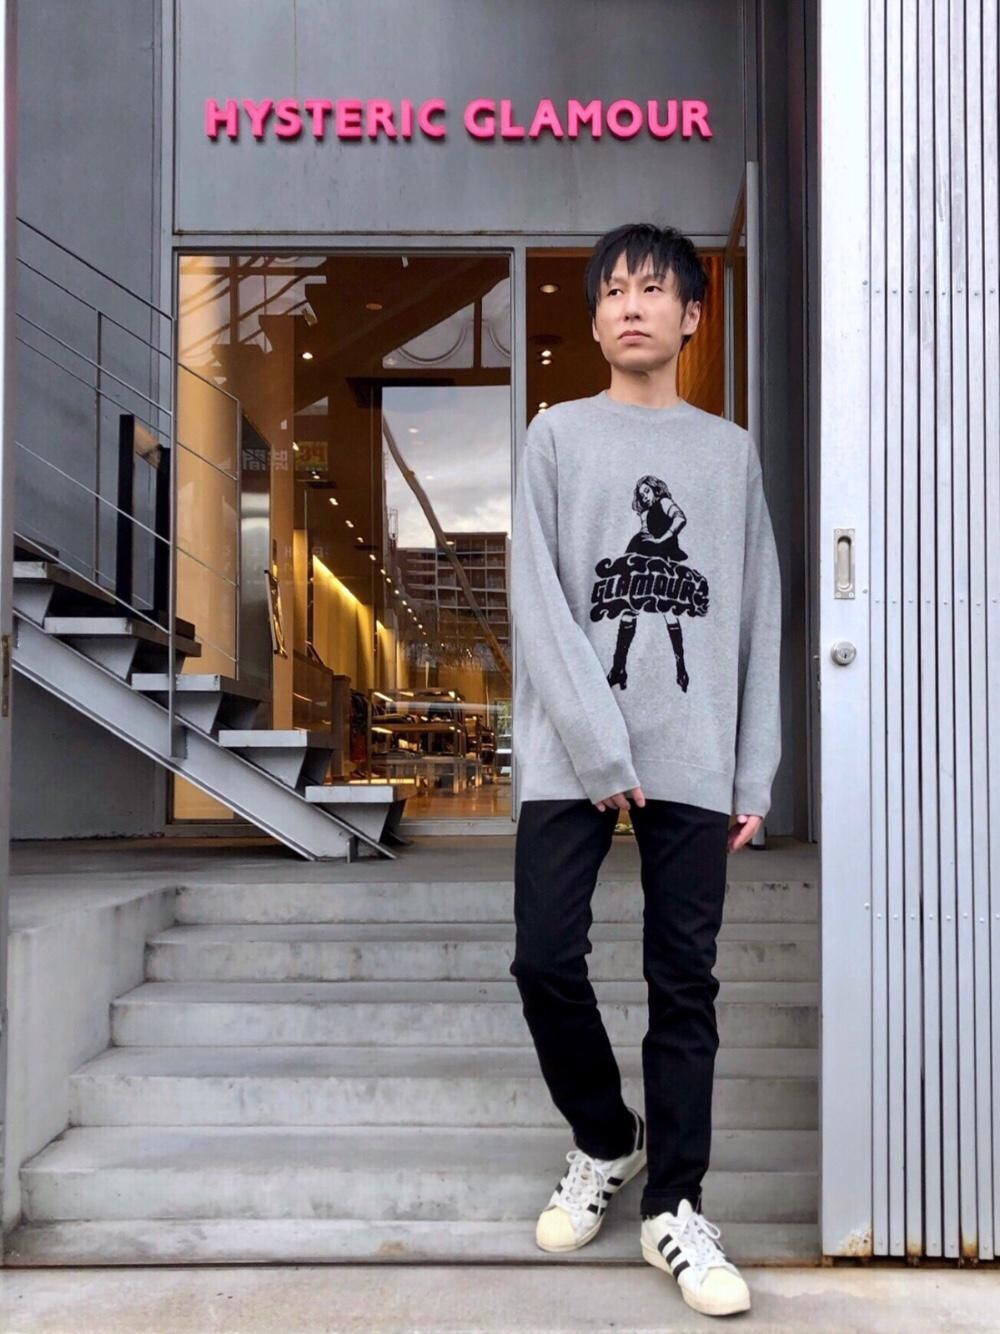 6,900円ヒステリックグラマー ＶＩＸＥＮ ＧＩＲＬ ジャガード セーター